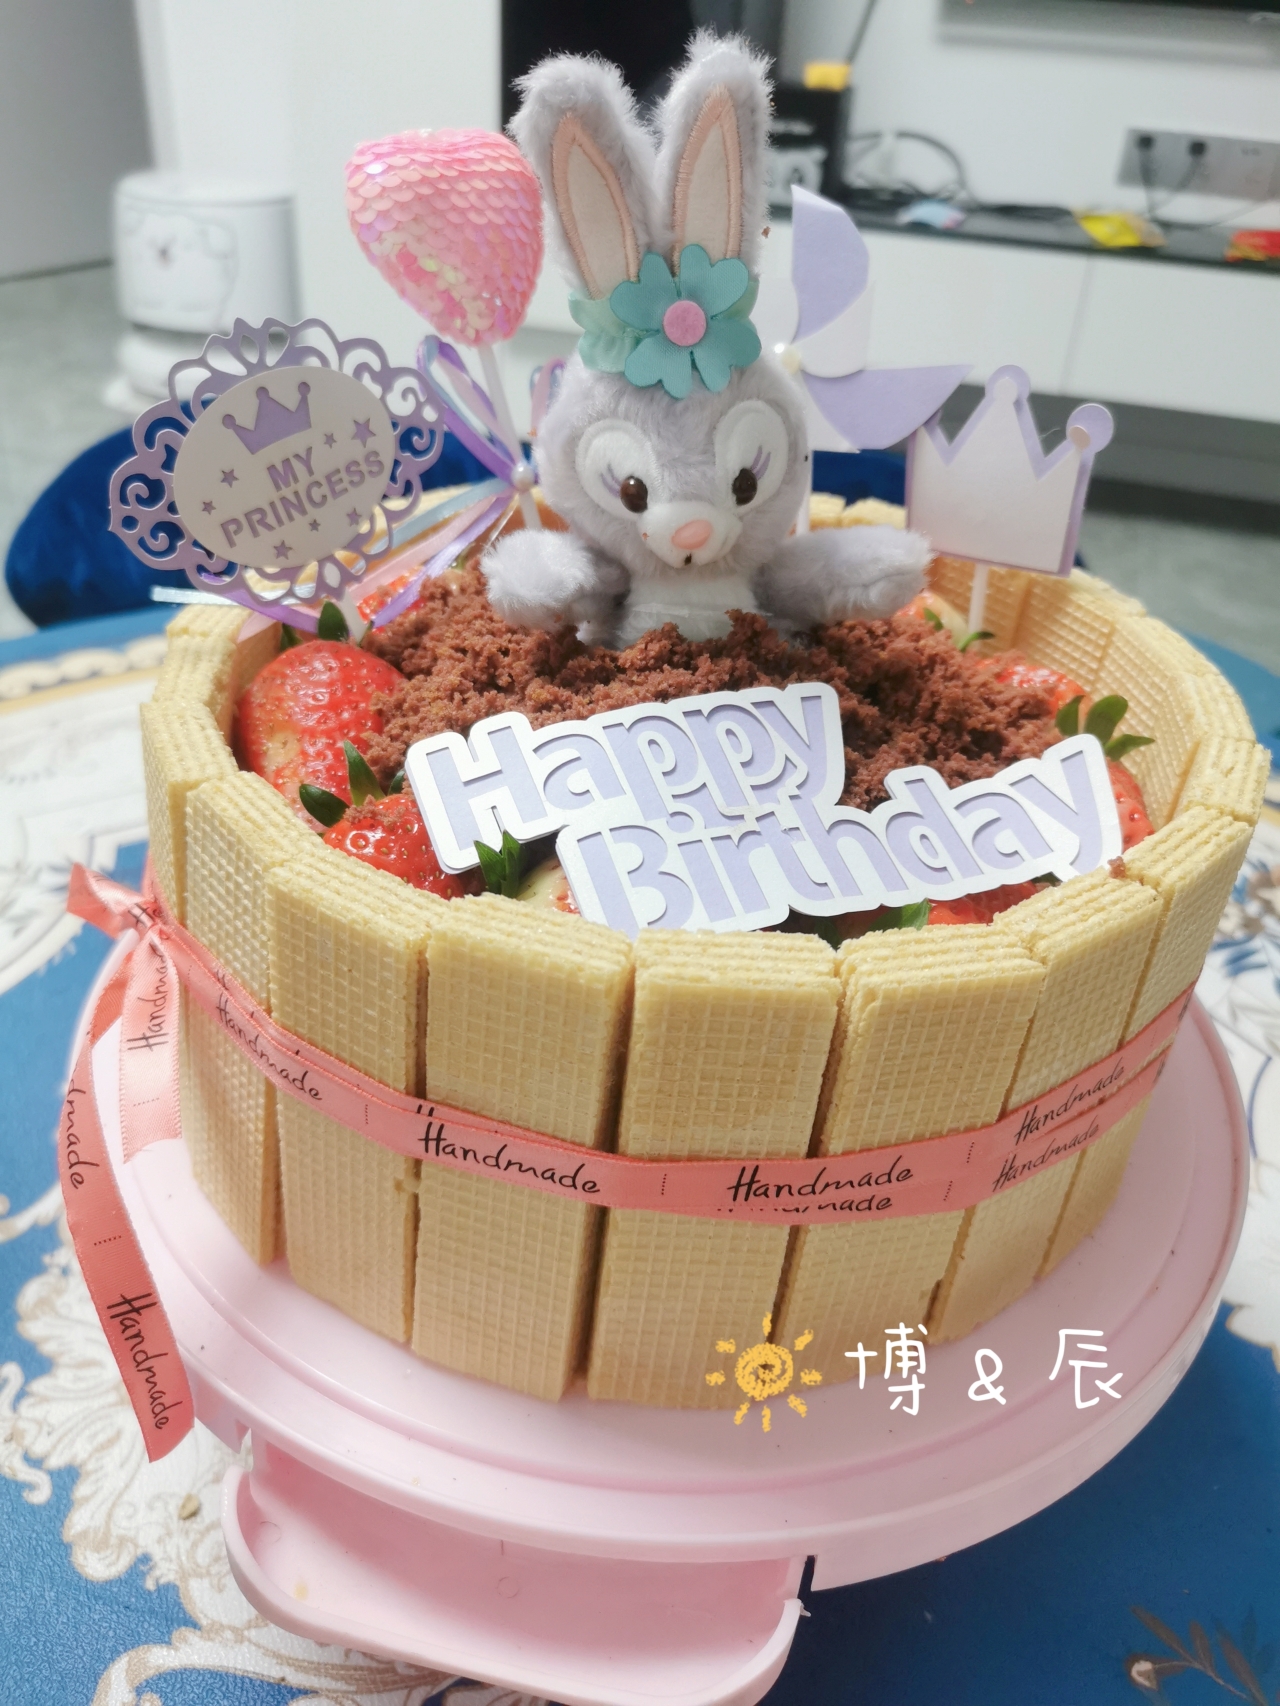 生日蛋糕教程【威化饼干围边】